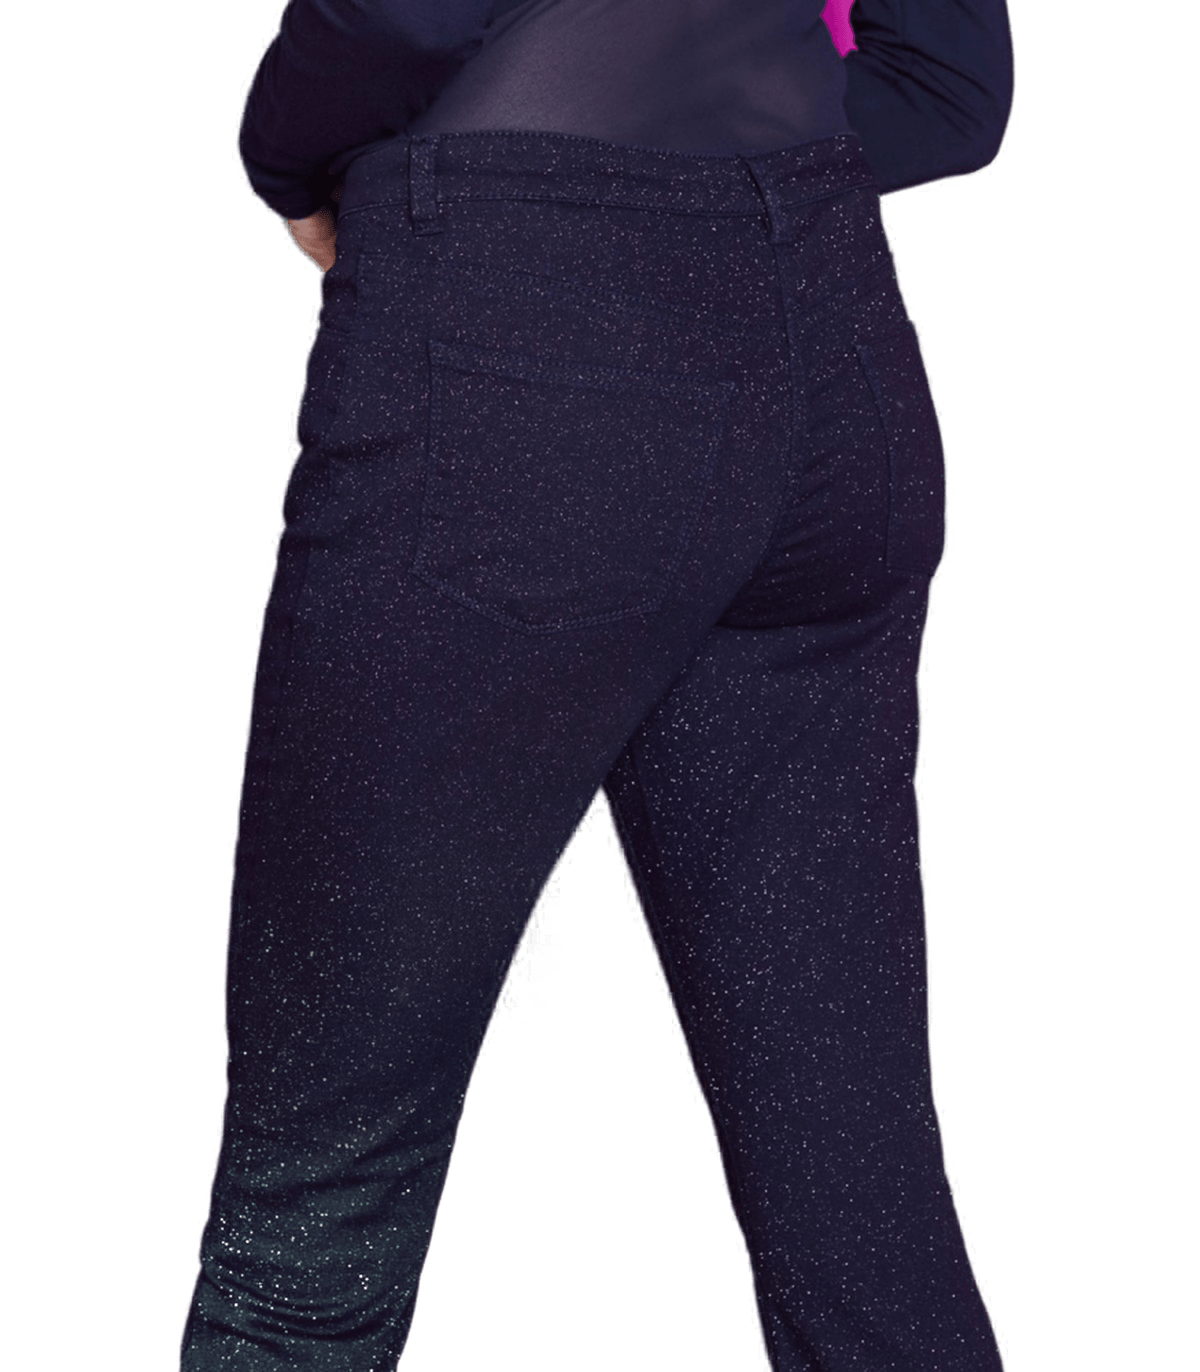 Philippe Matignon Pantalone da Donna Glitterato colore Blu A013134PM S14 - Passarelli Biancheria